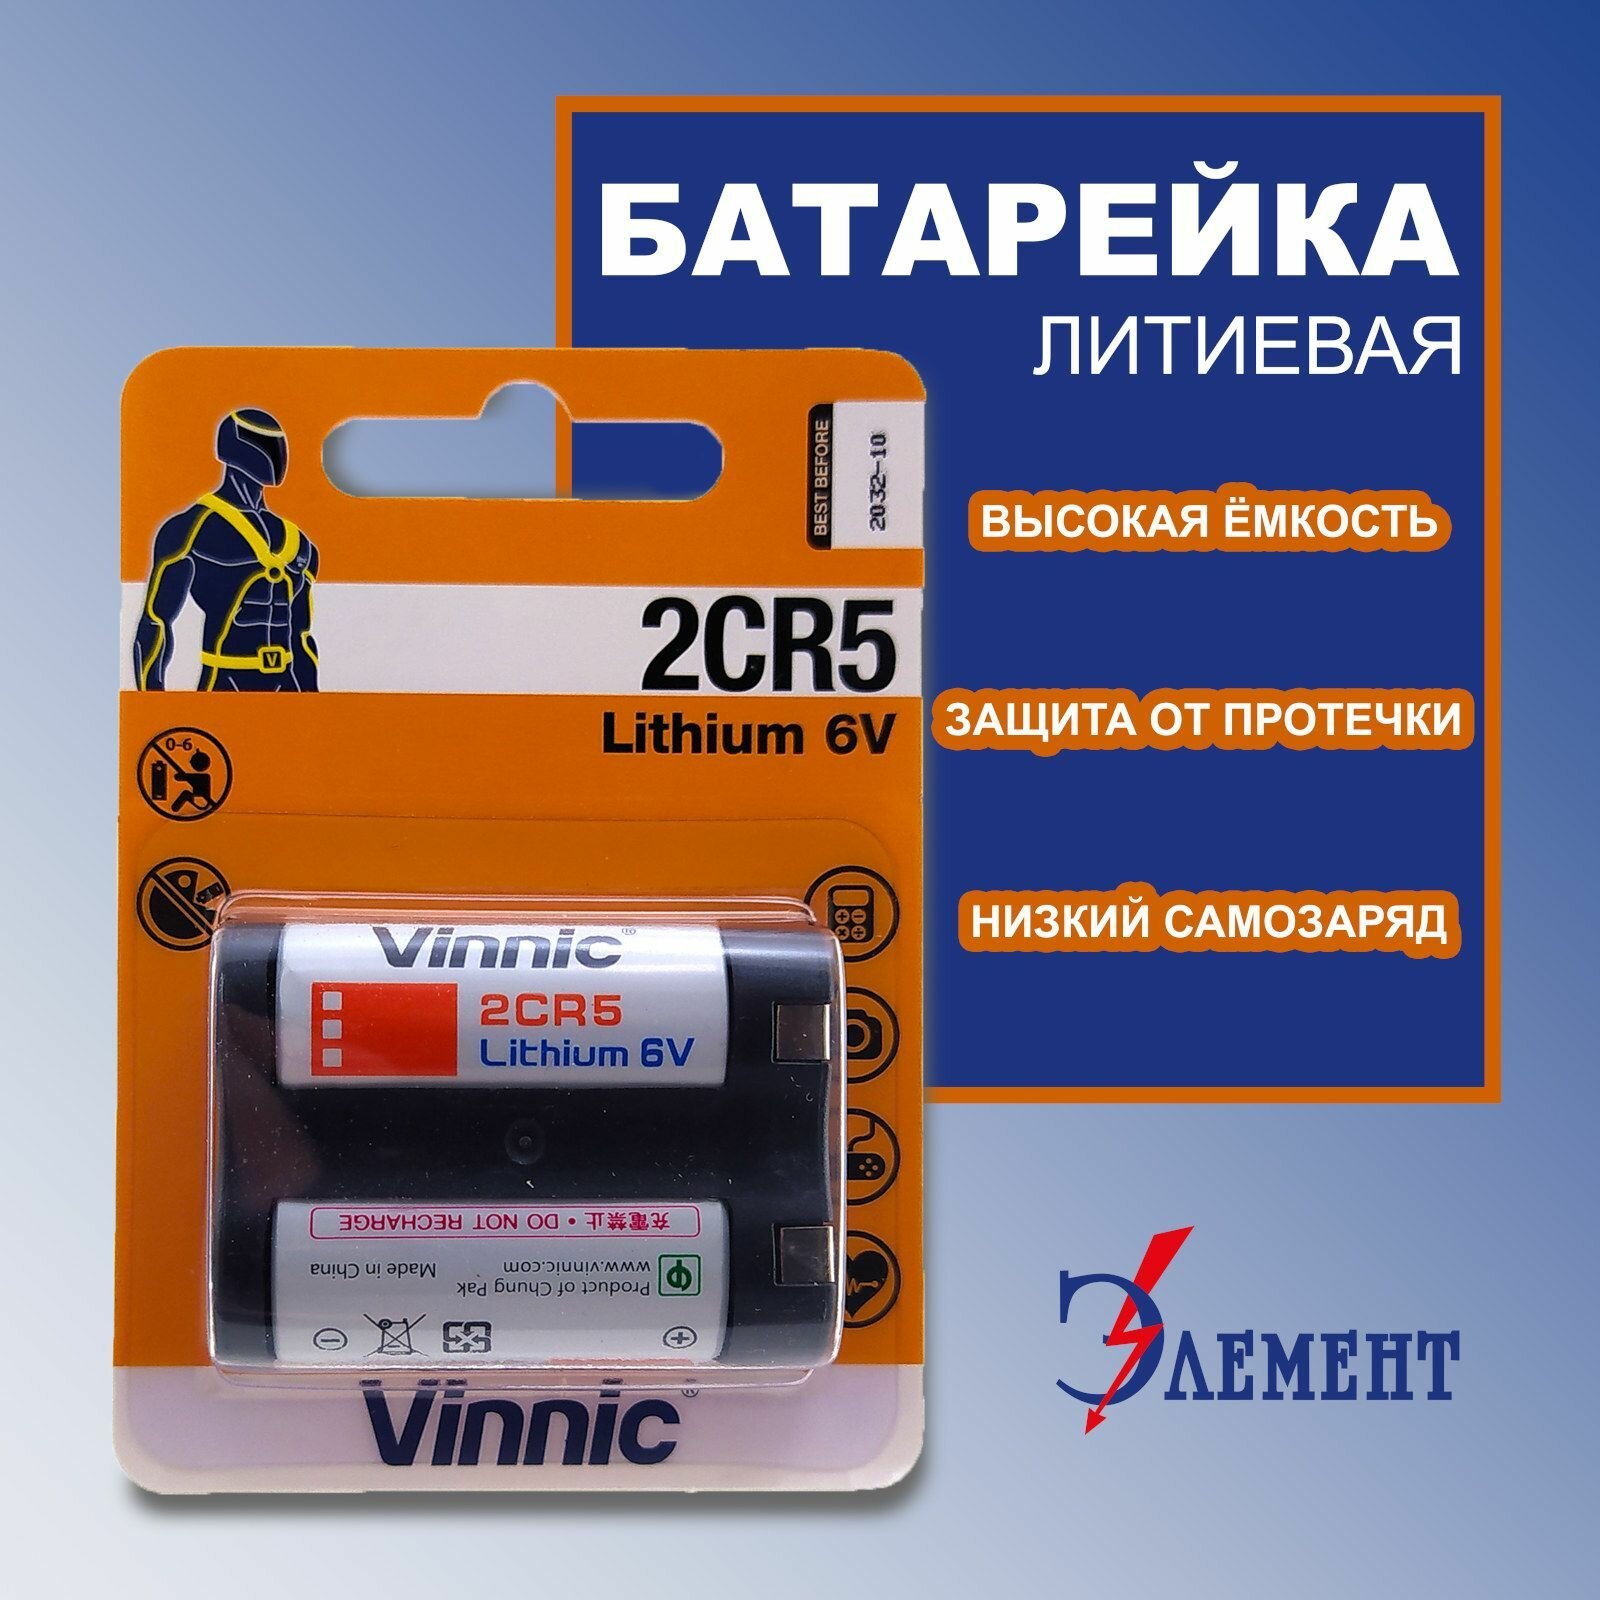 Батарейка VINNIC 2CR5 6В литиевая